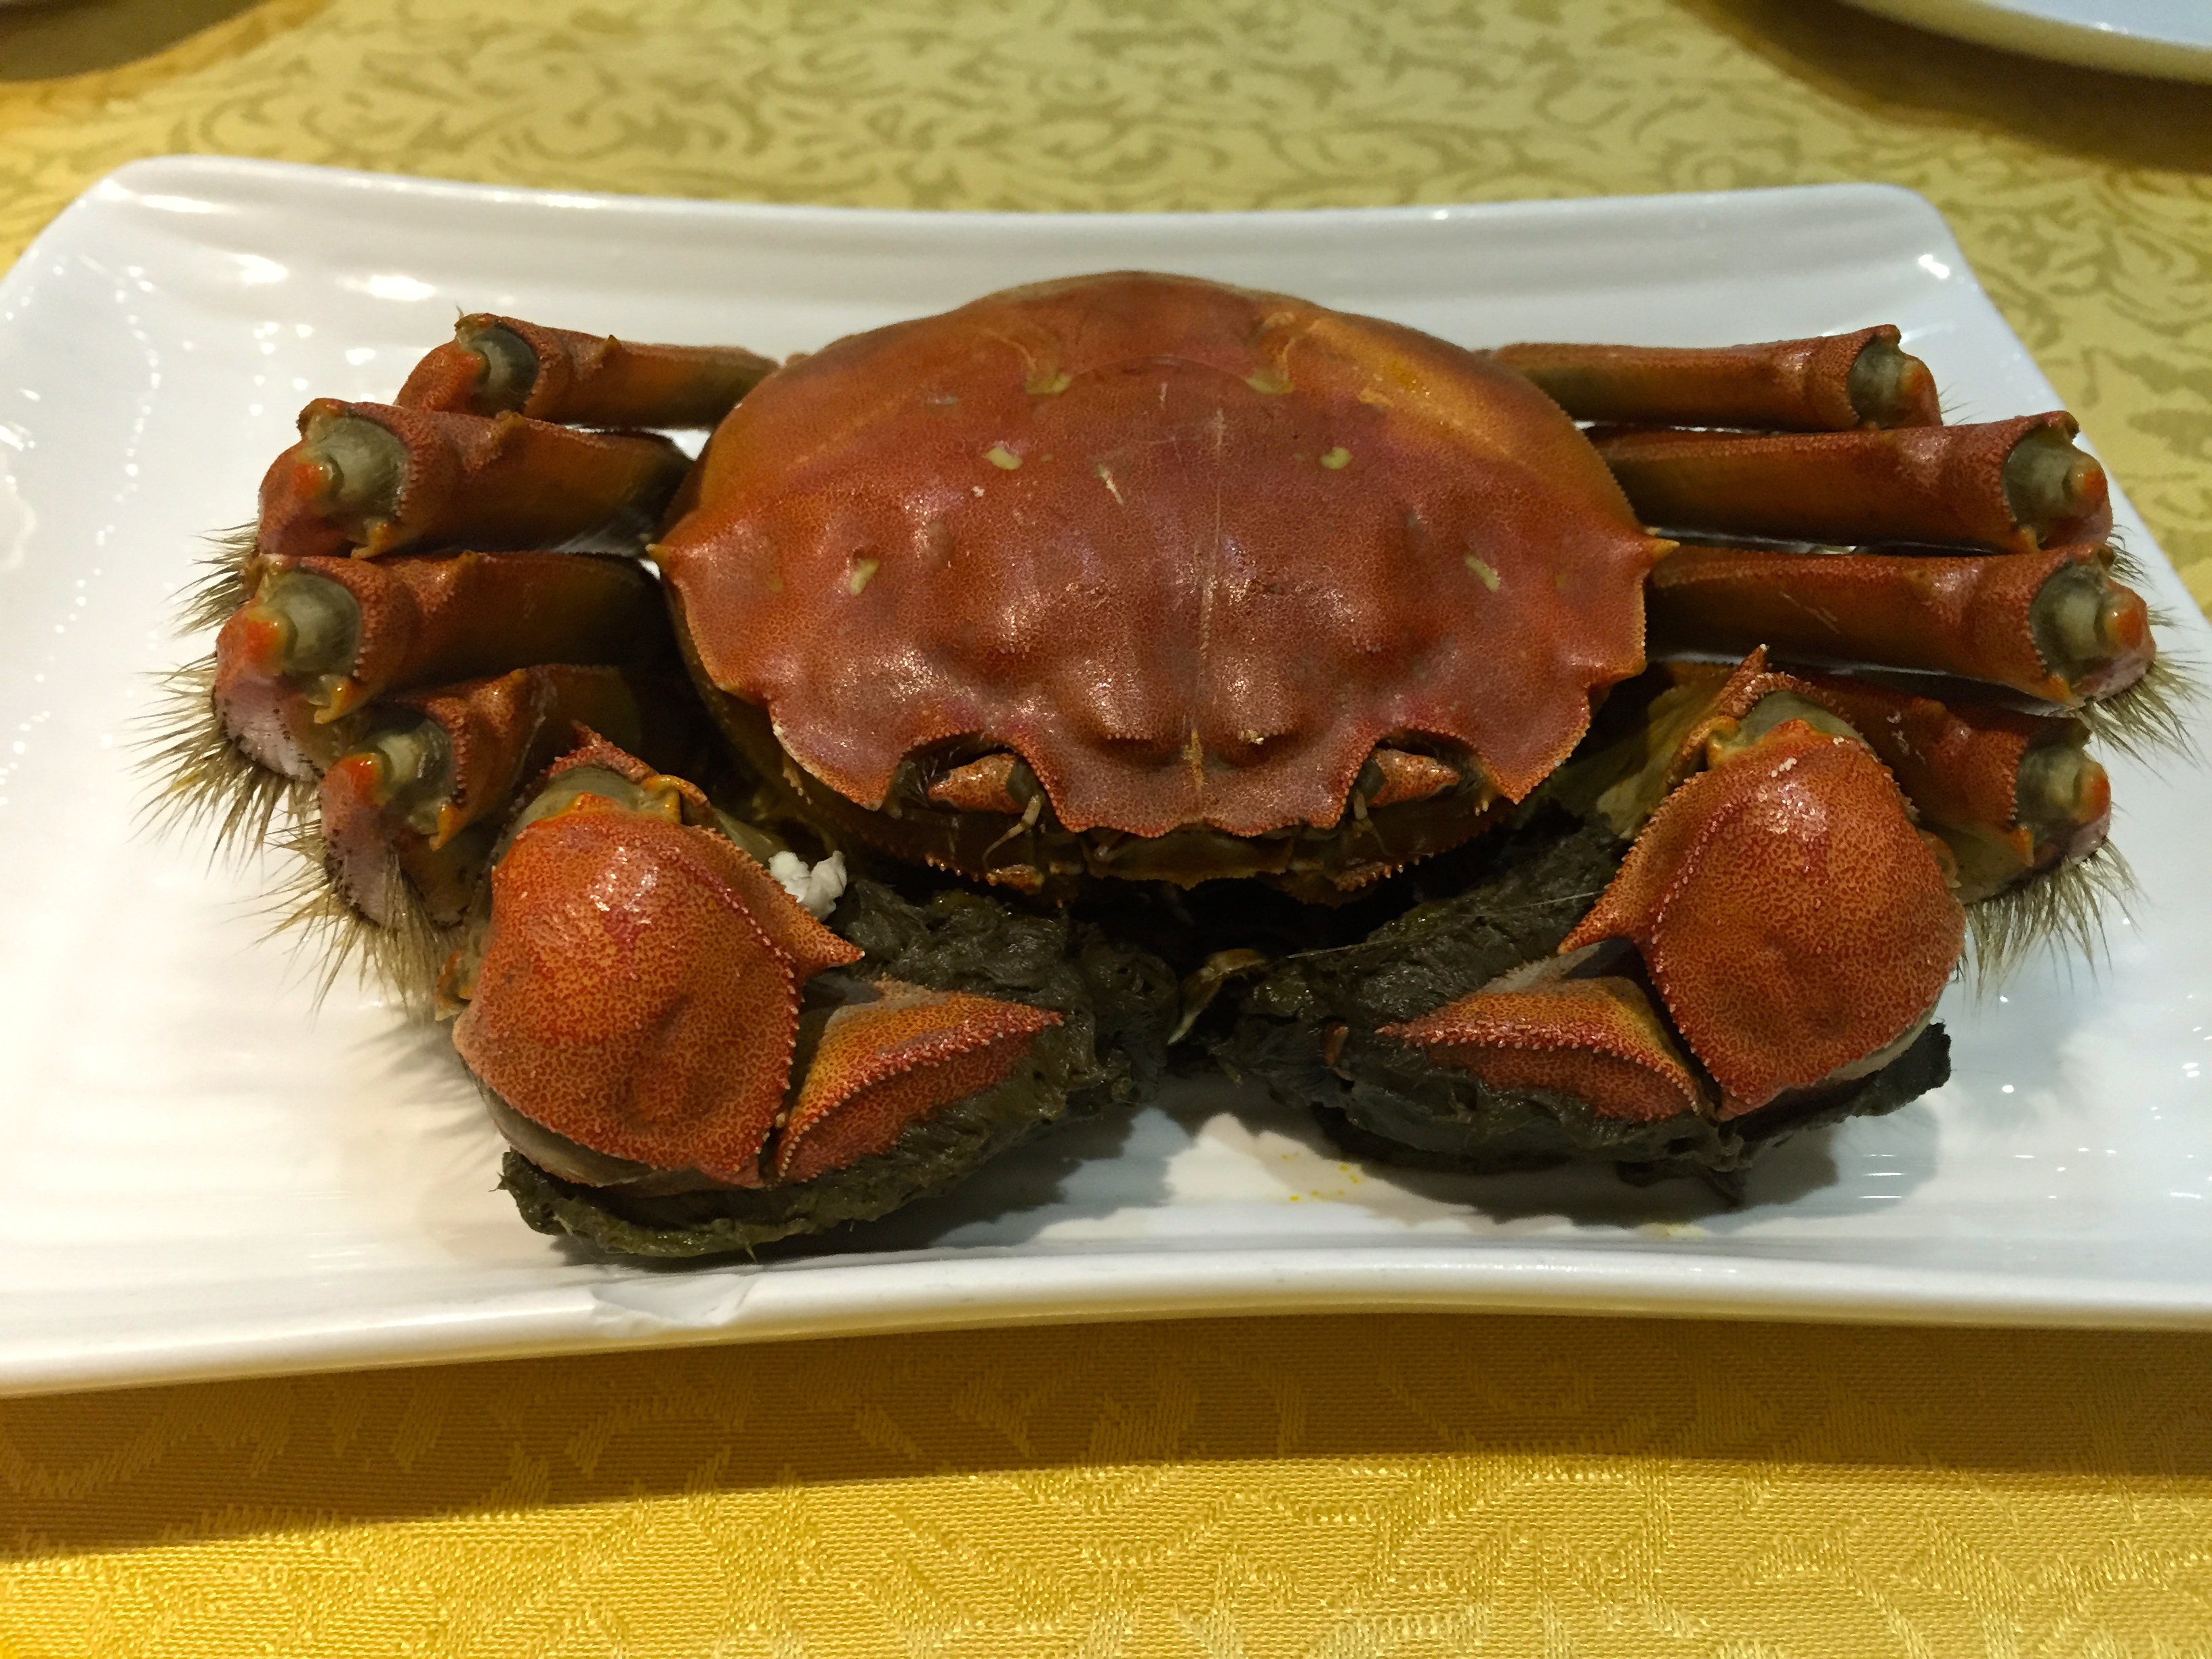 Hairy Crab Season at Wu Kong